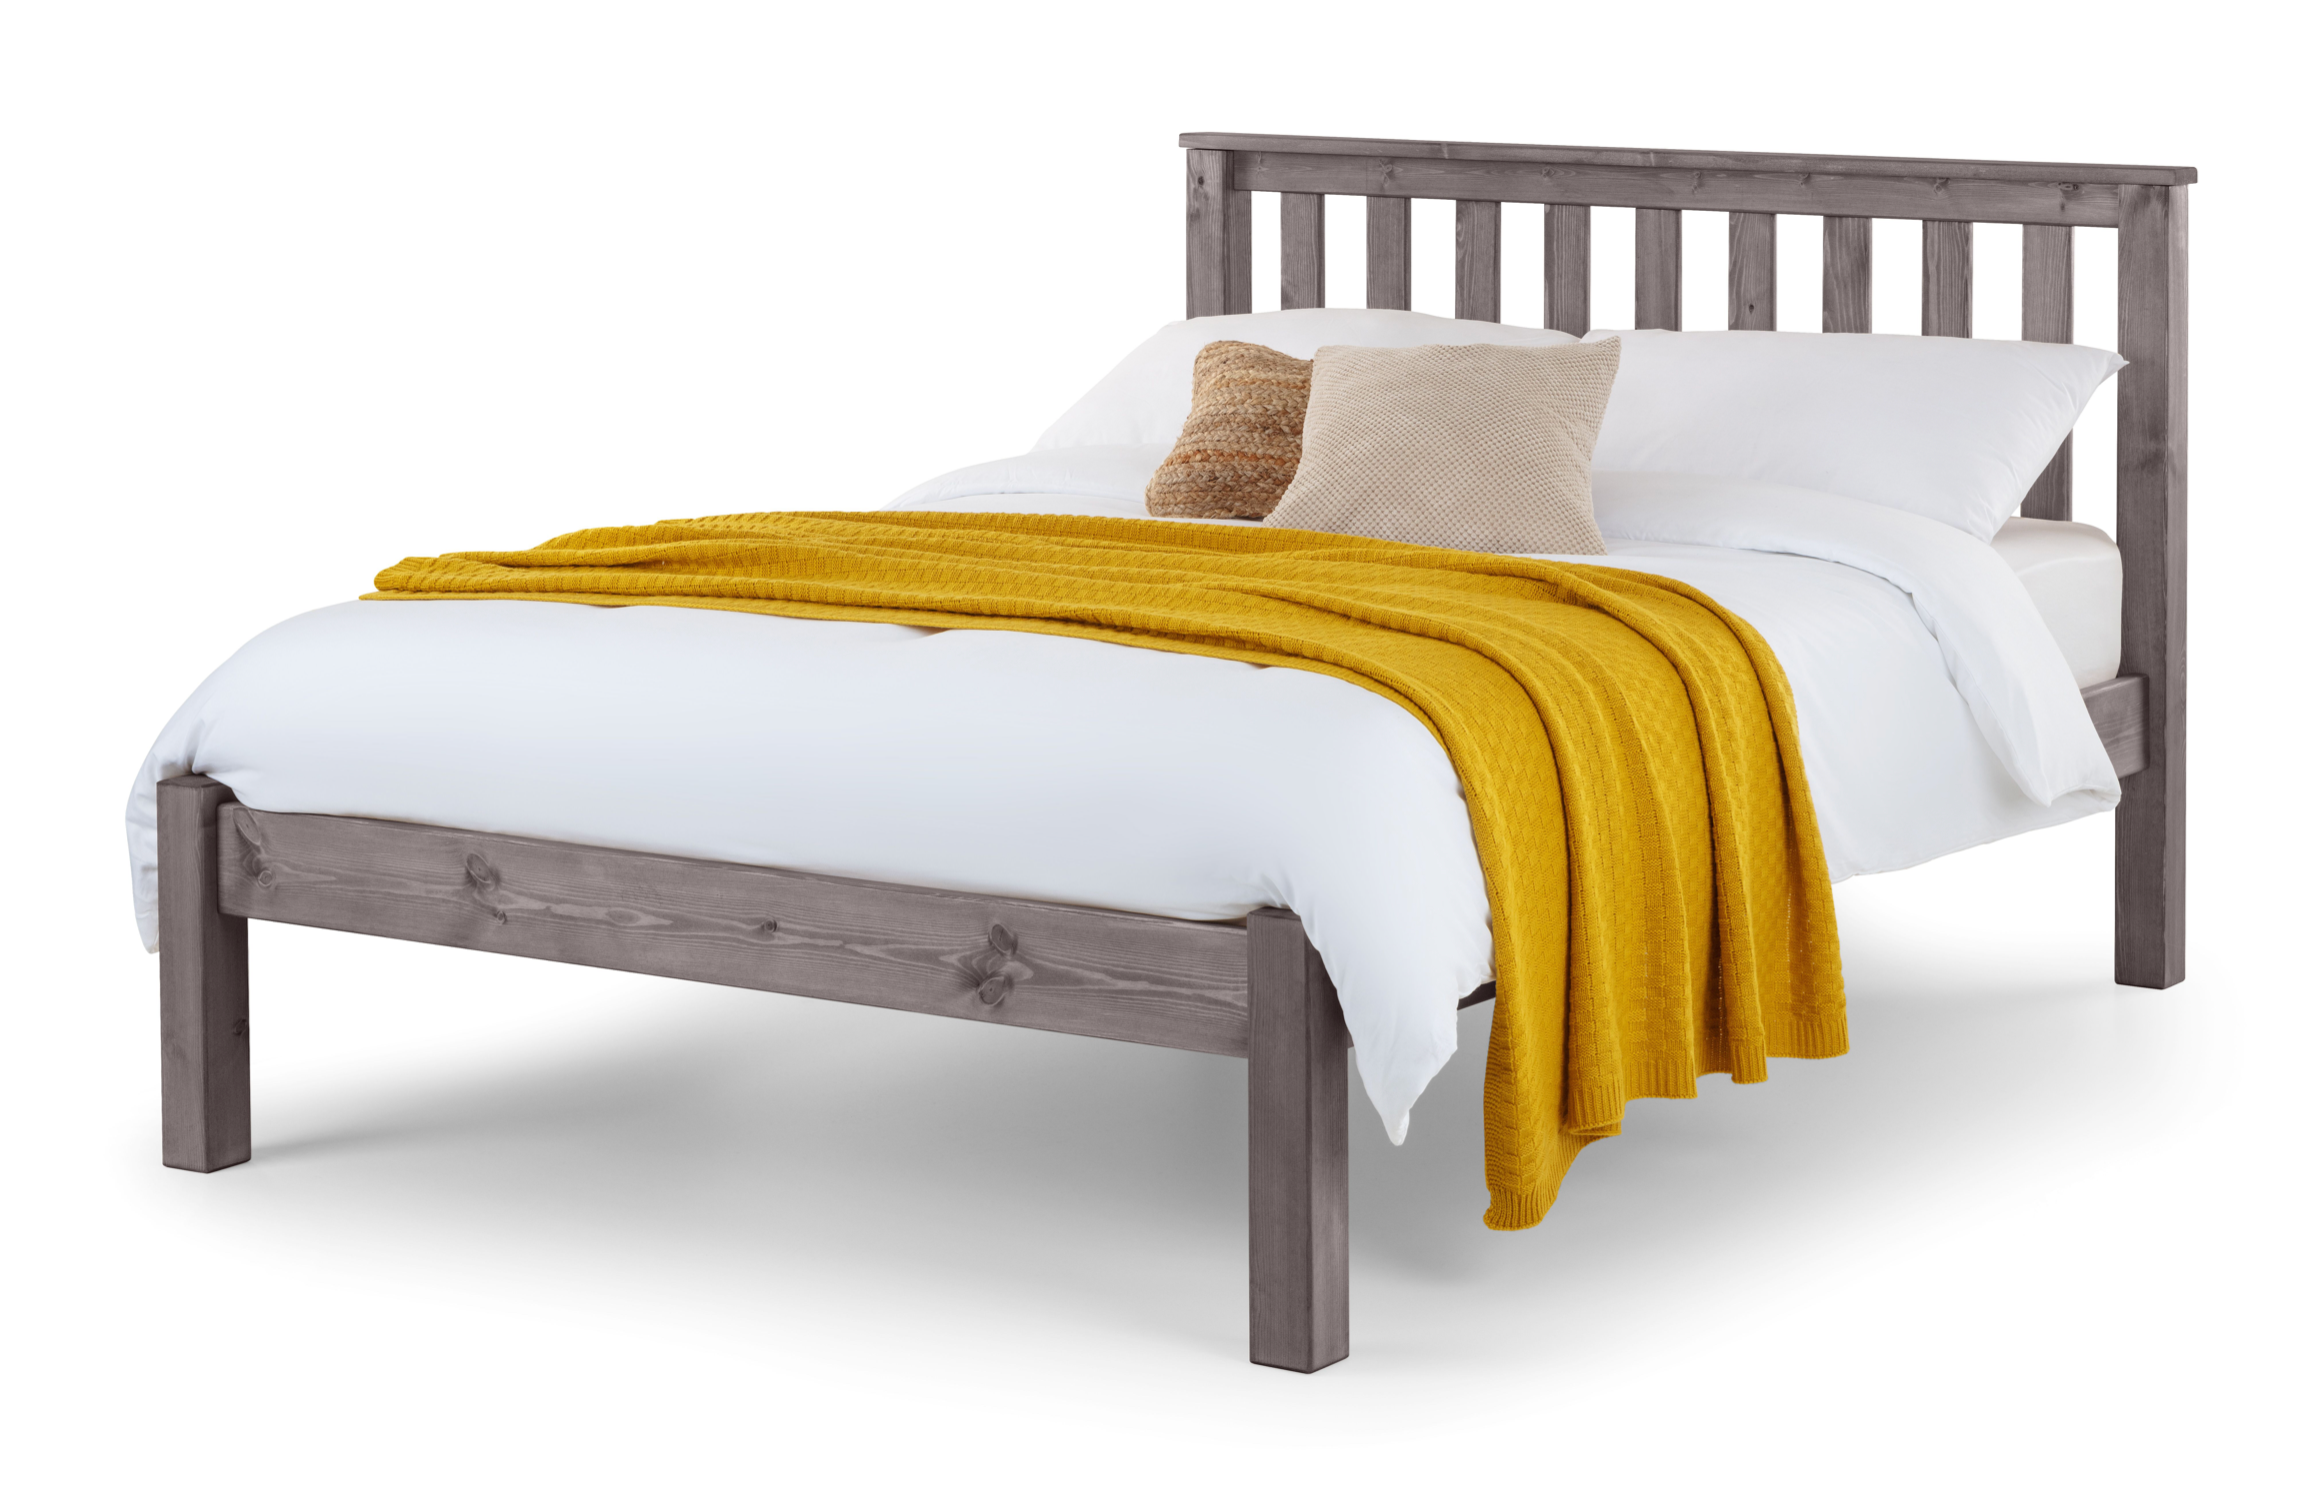 Shed Beds - Epperstone Bed frame